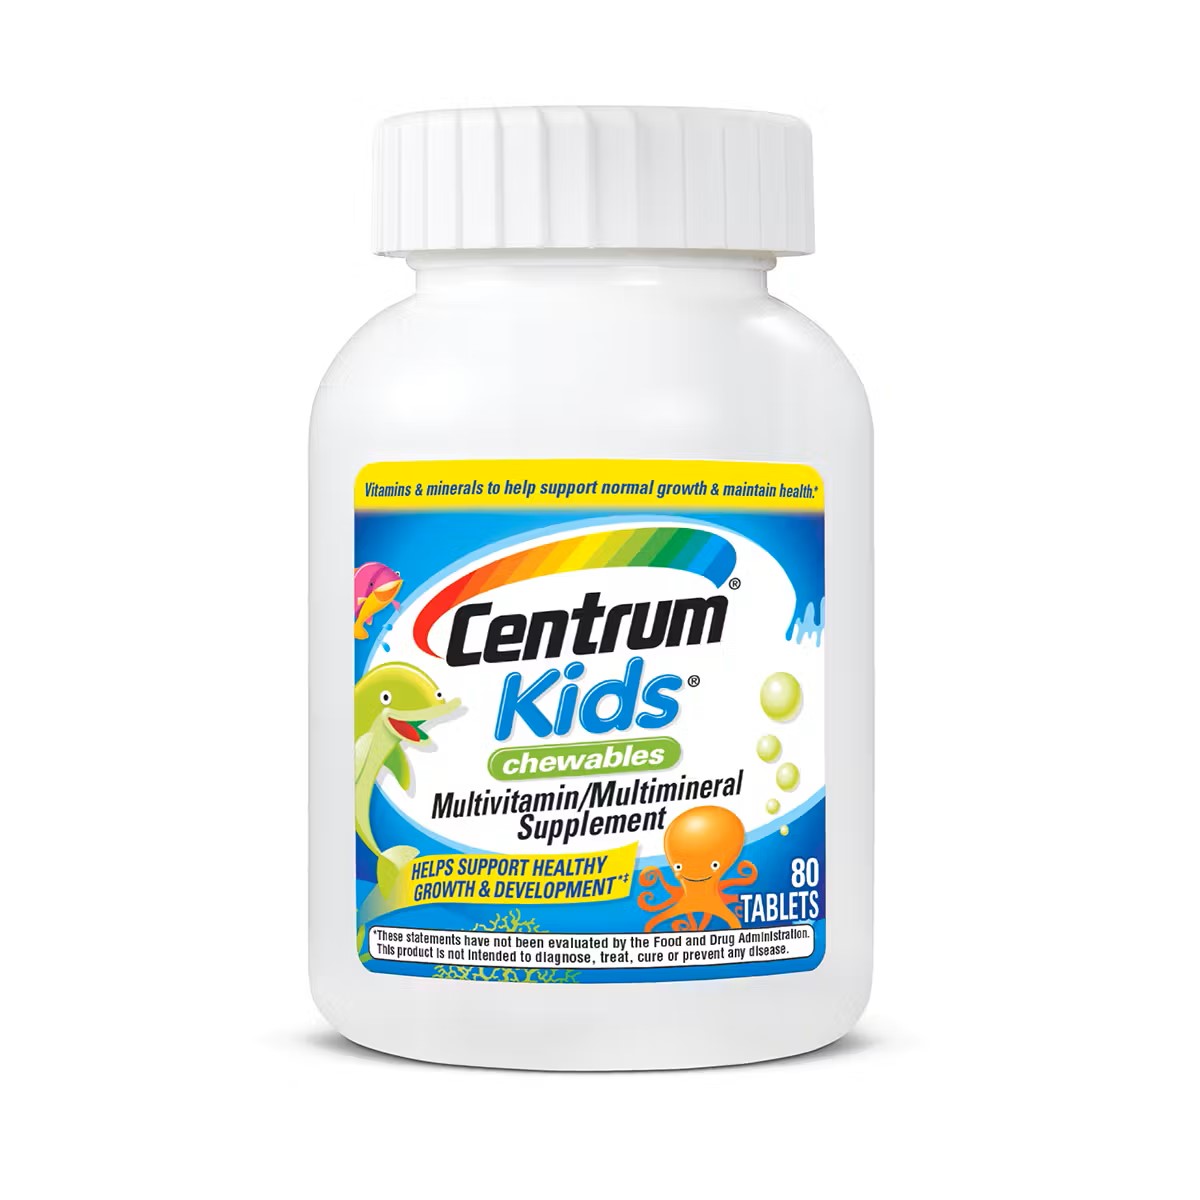 Vitamin tổng hợp dành cho Trẻ em từ 2 tuổi - Centrum Kids Chewables Multivitamin